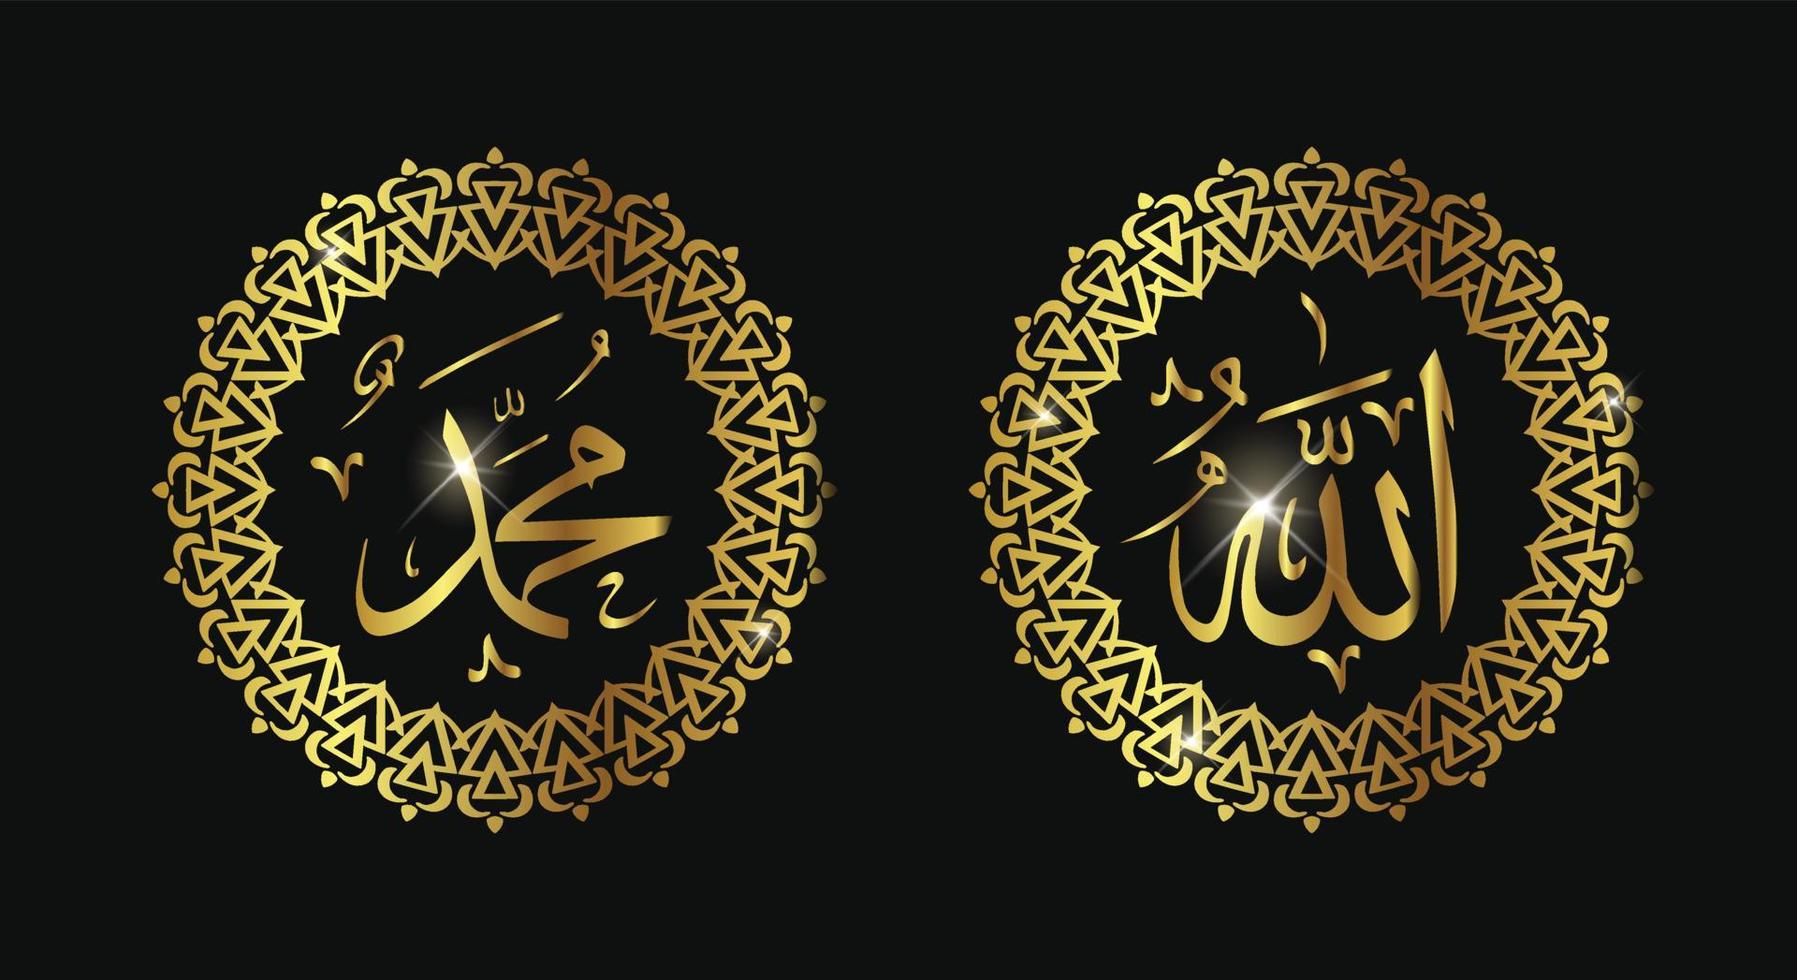 allah muhammad arabisk kalligrafi, islamisk väggkonstdekoration vektor